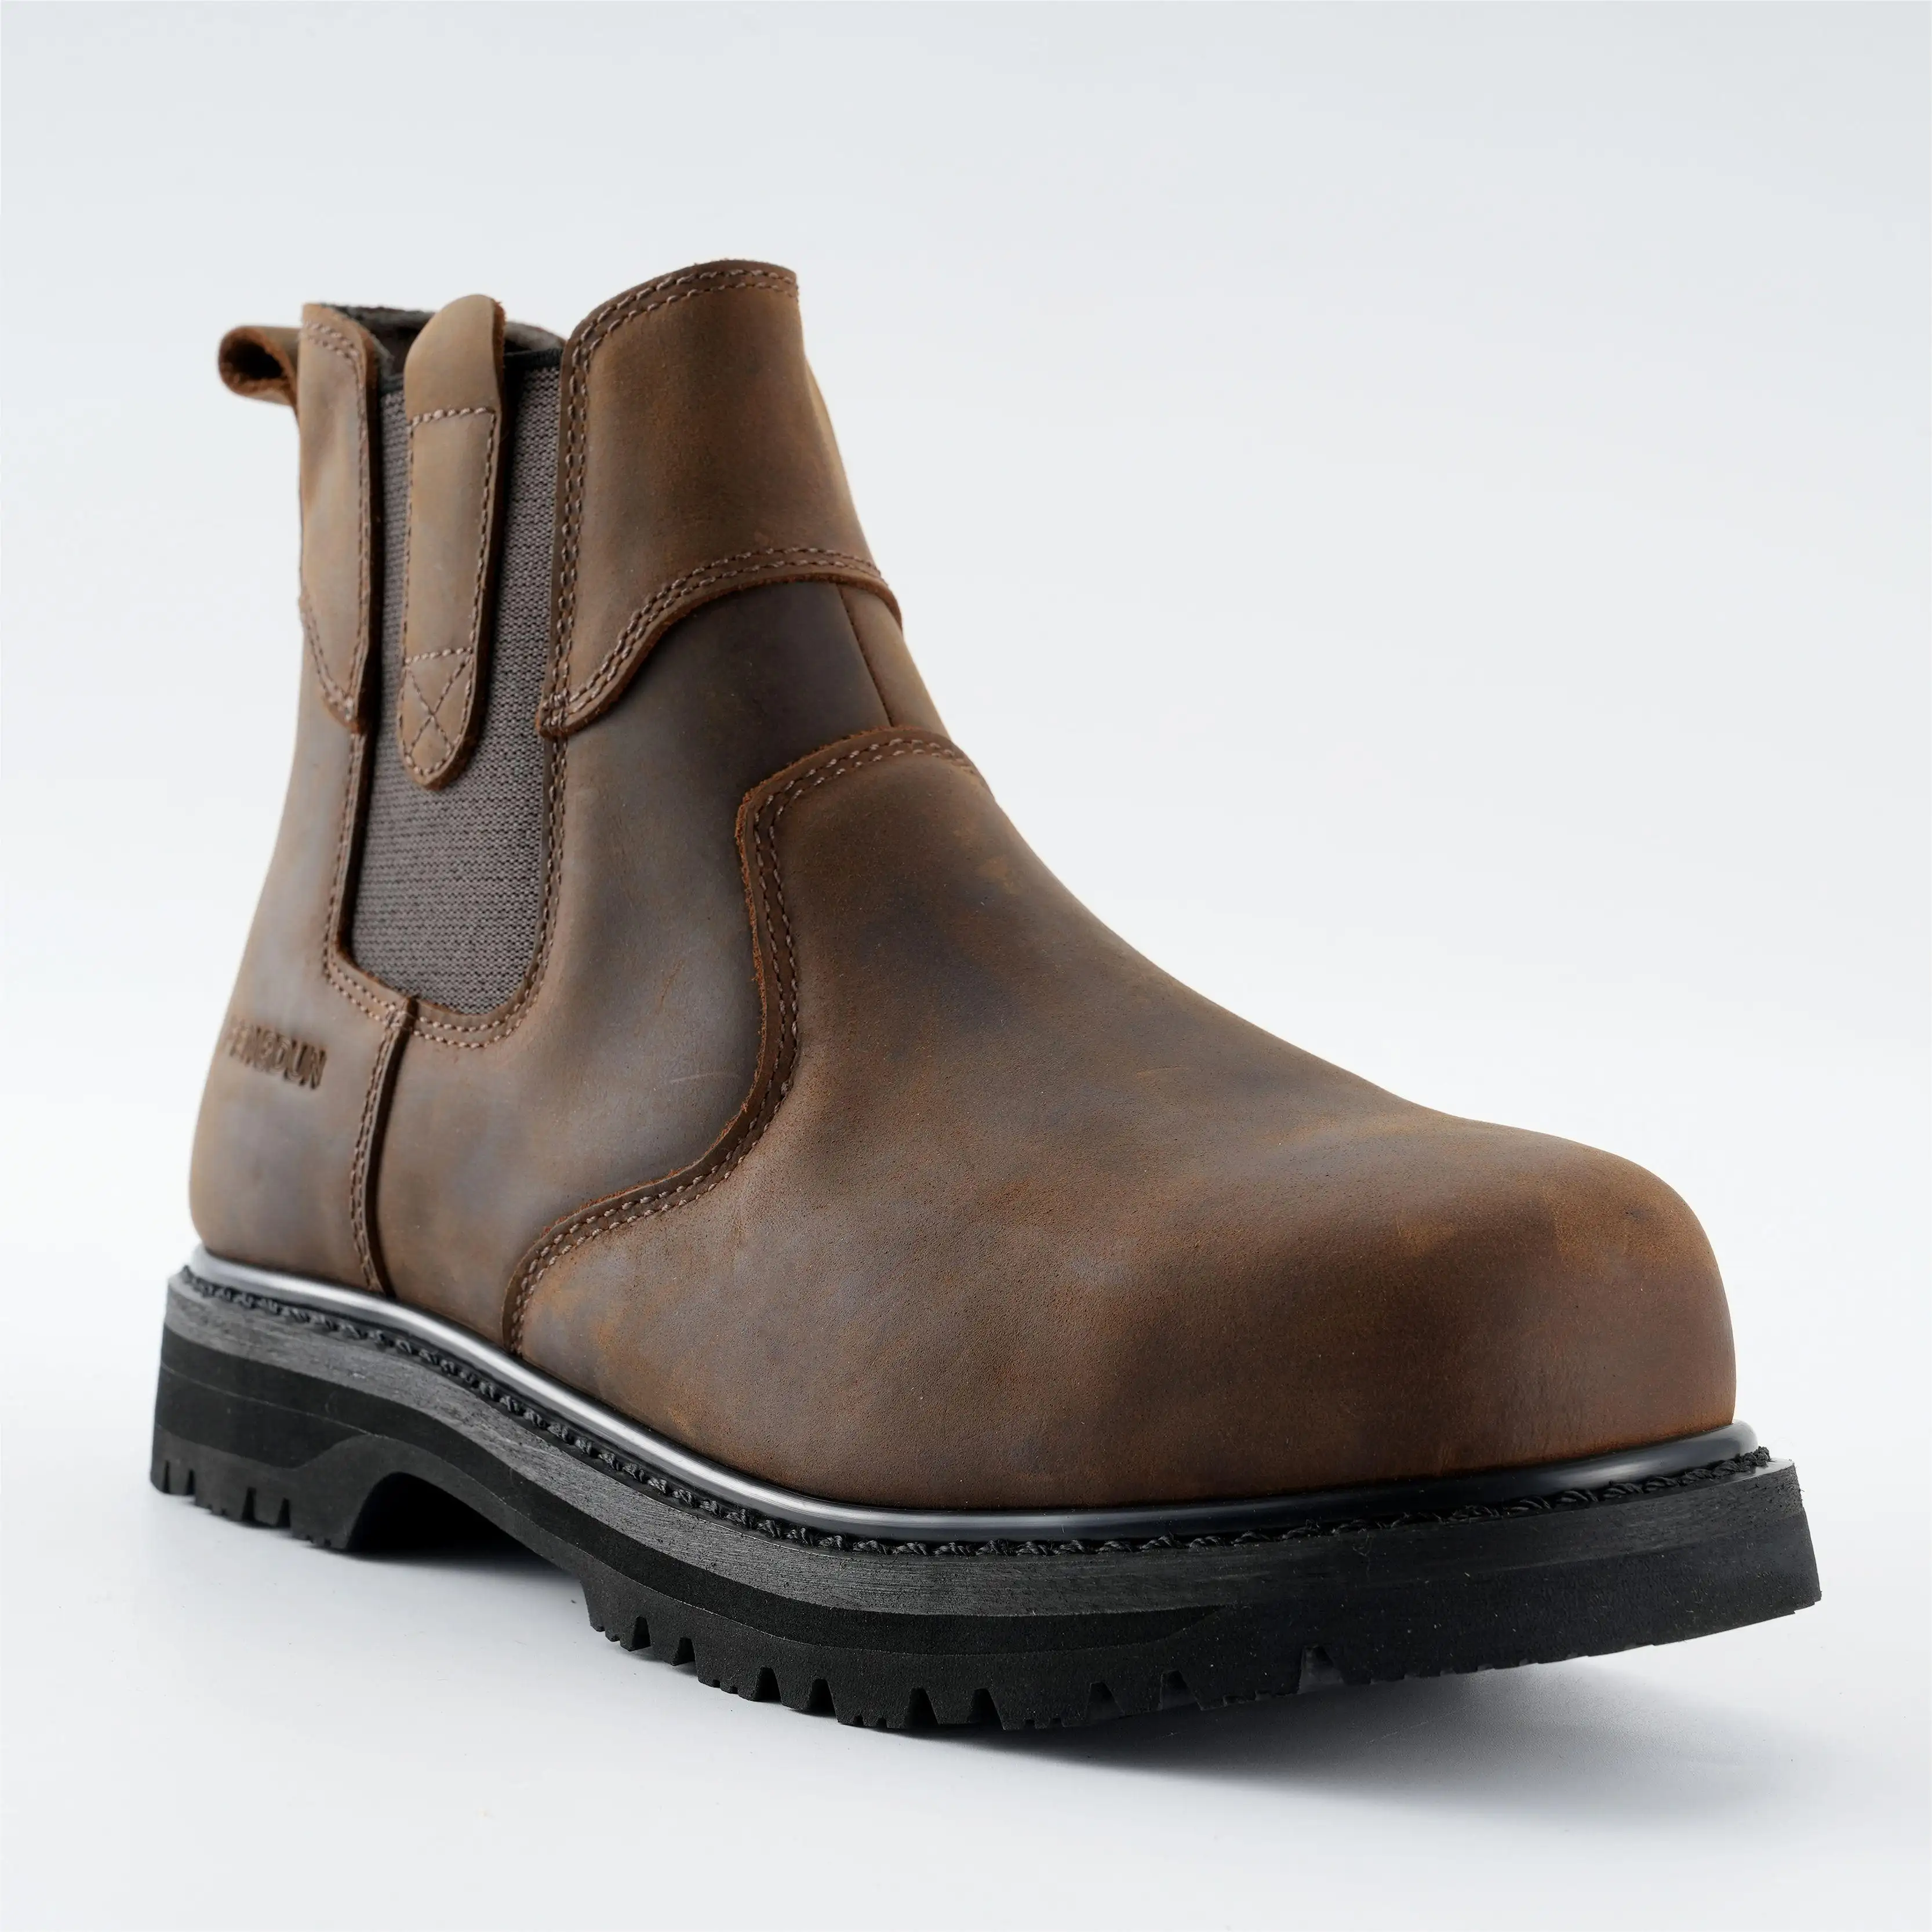 스틸 발가락 안전 부츠 남성용 헤비 듀티 광업 산업 건설 첼시 작업 부츠 안전 신발